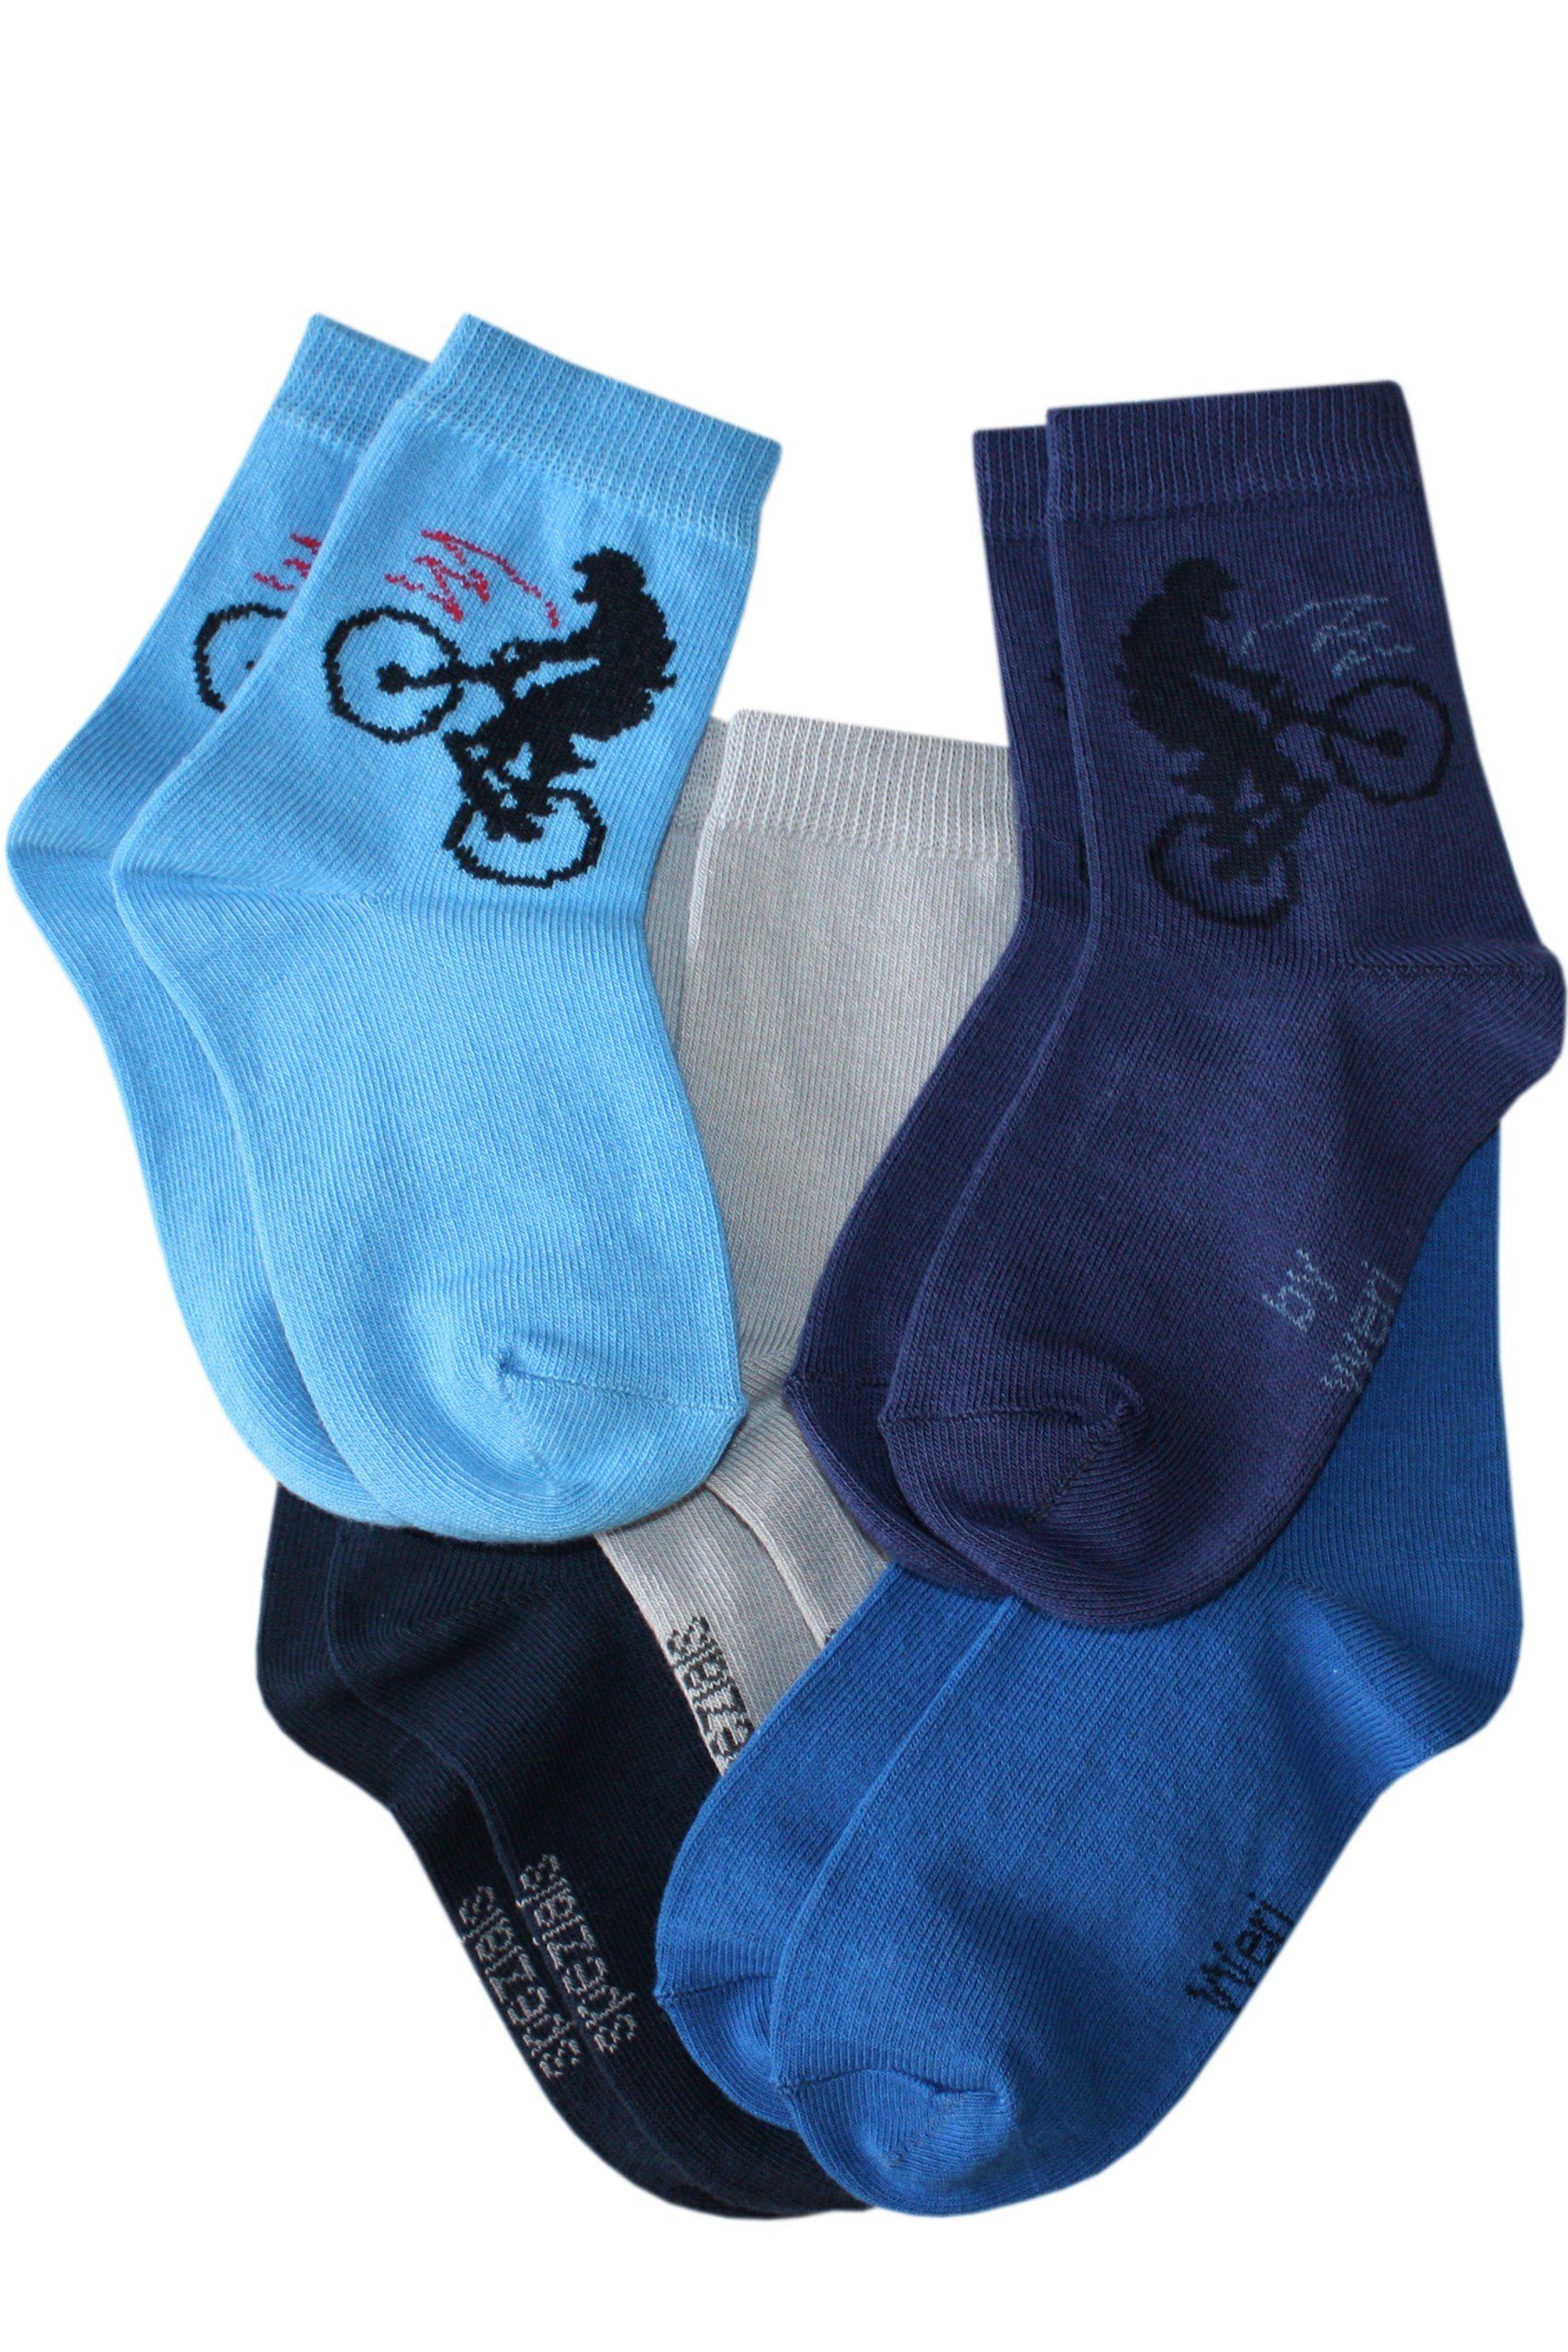 Wäsche/Bademode Socken WERI SPEZIALS Strumpfhersteller GmbH Socken Kinder Socken 5-er Pack für Jungs Biker aus Baumwolle (Set) 5